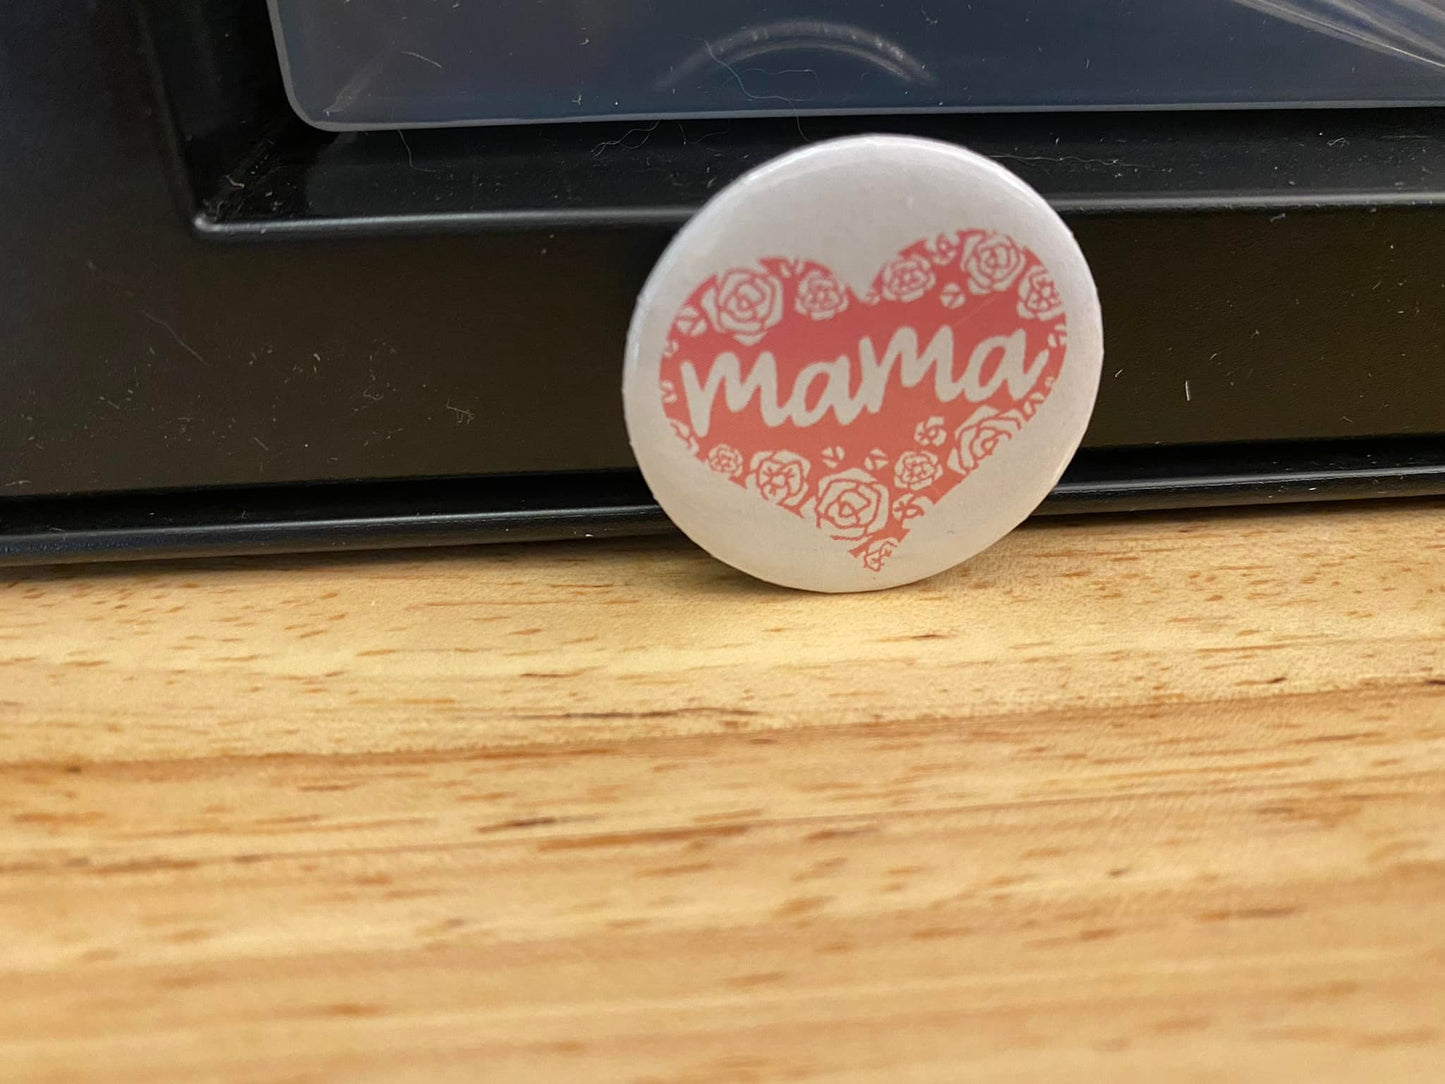 Mama Heart 1.25" / 2.25" Button Pin